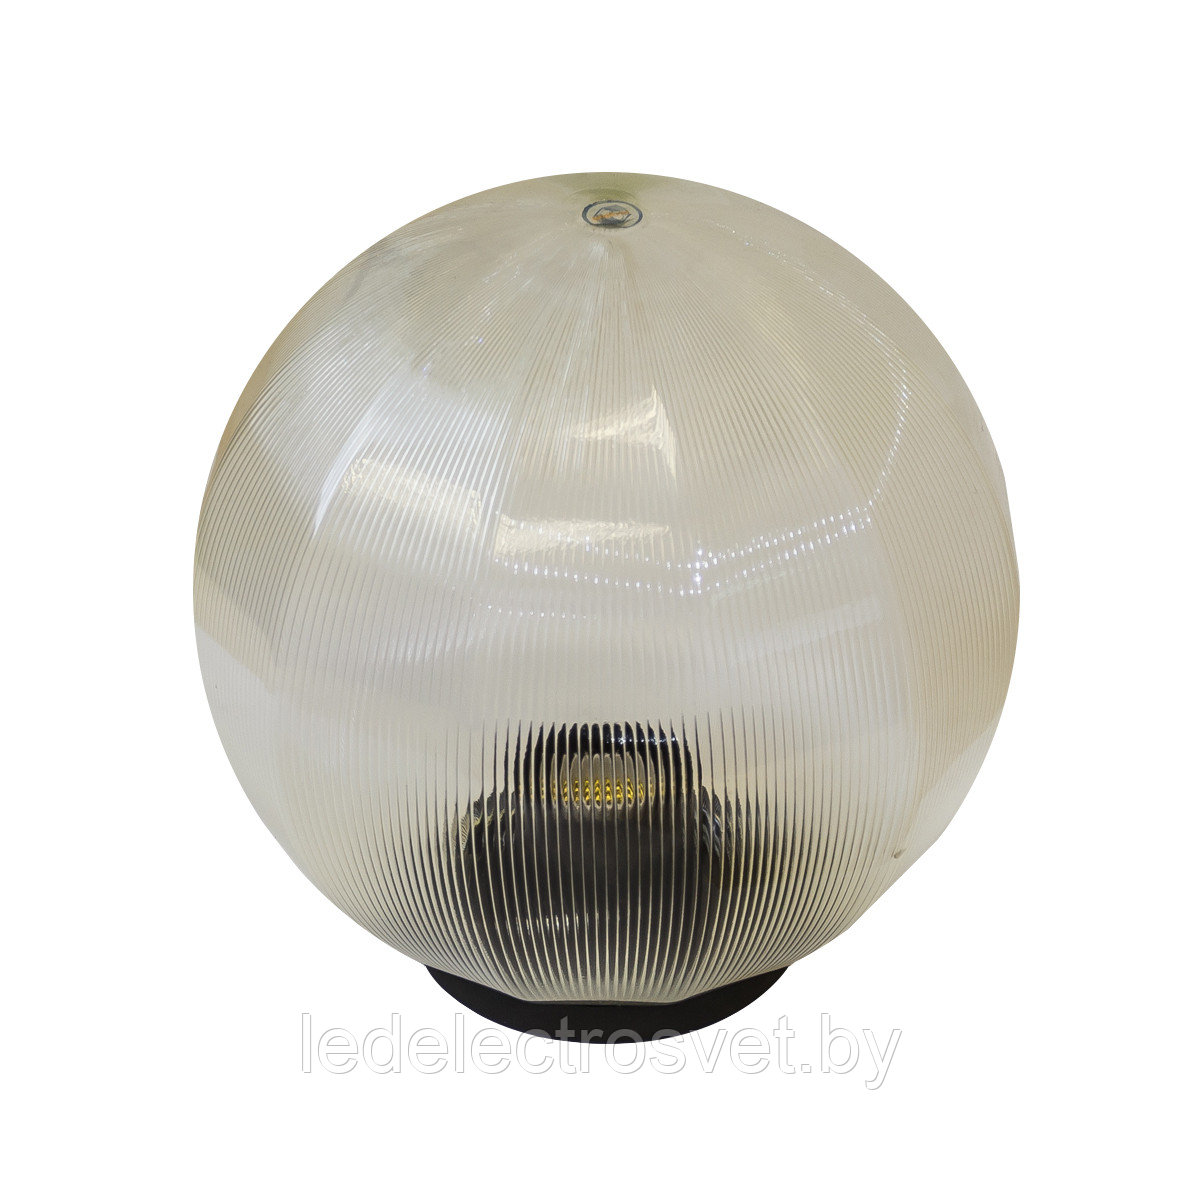 Светильник НТУ 12-100-352 УХЛ1.1,
призма с гранями прозрачная